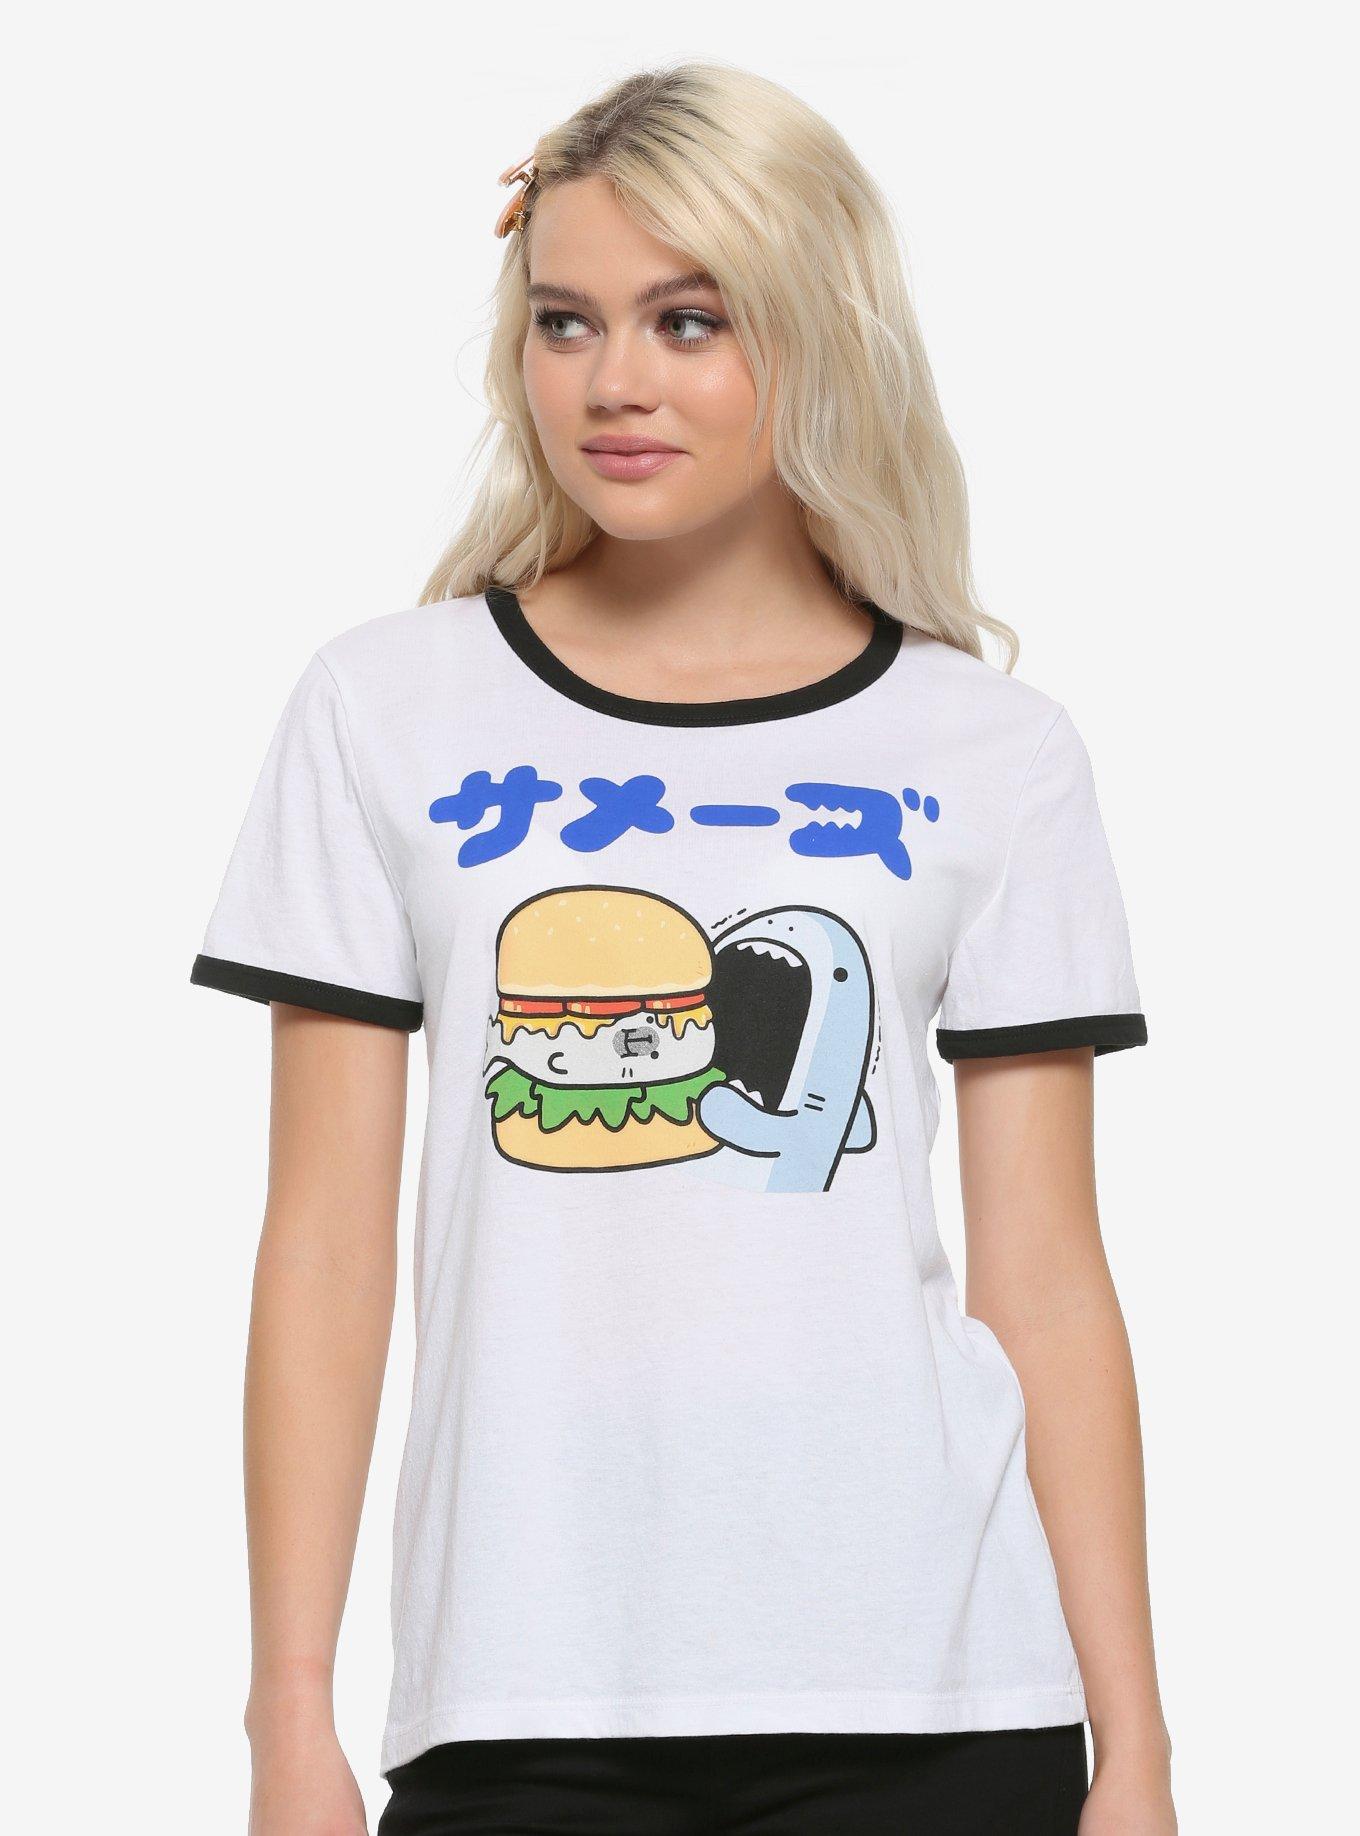 Samezu Shark & Seal Burger Girls Ringer T-Shirt, MULTI, hi-res